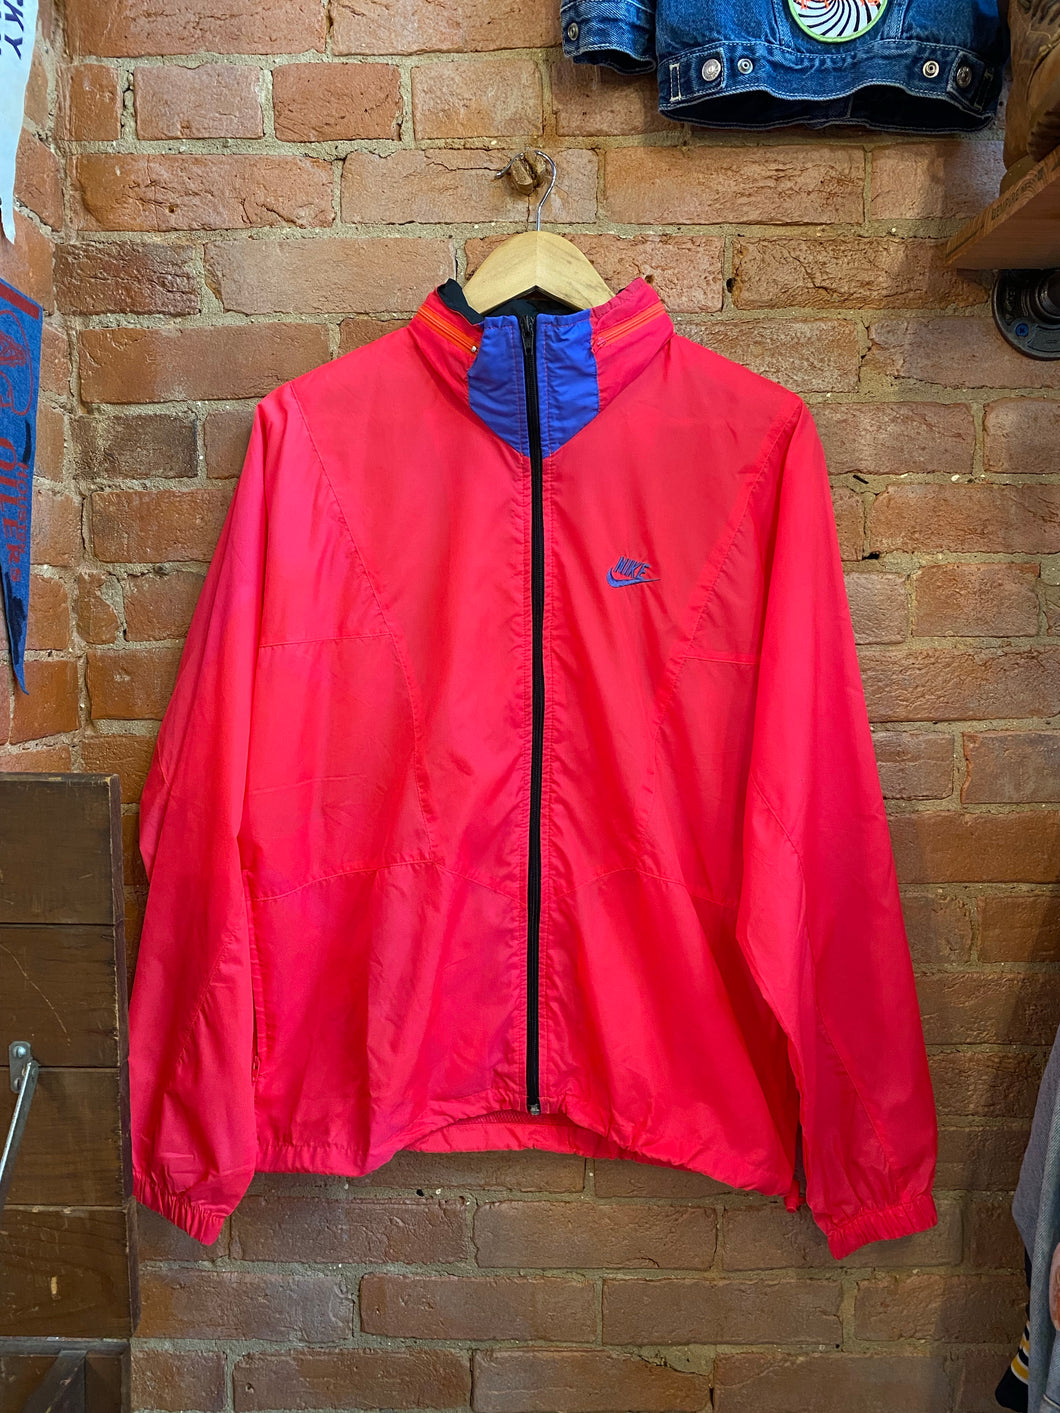 Vintage Hot Pink Nylon Nike Jacket: M